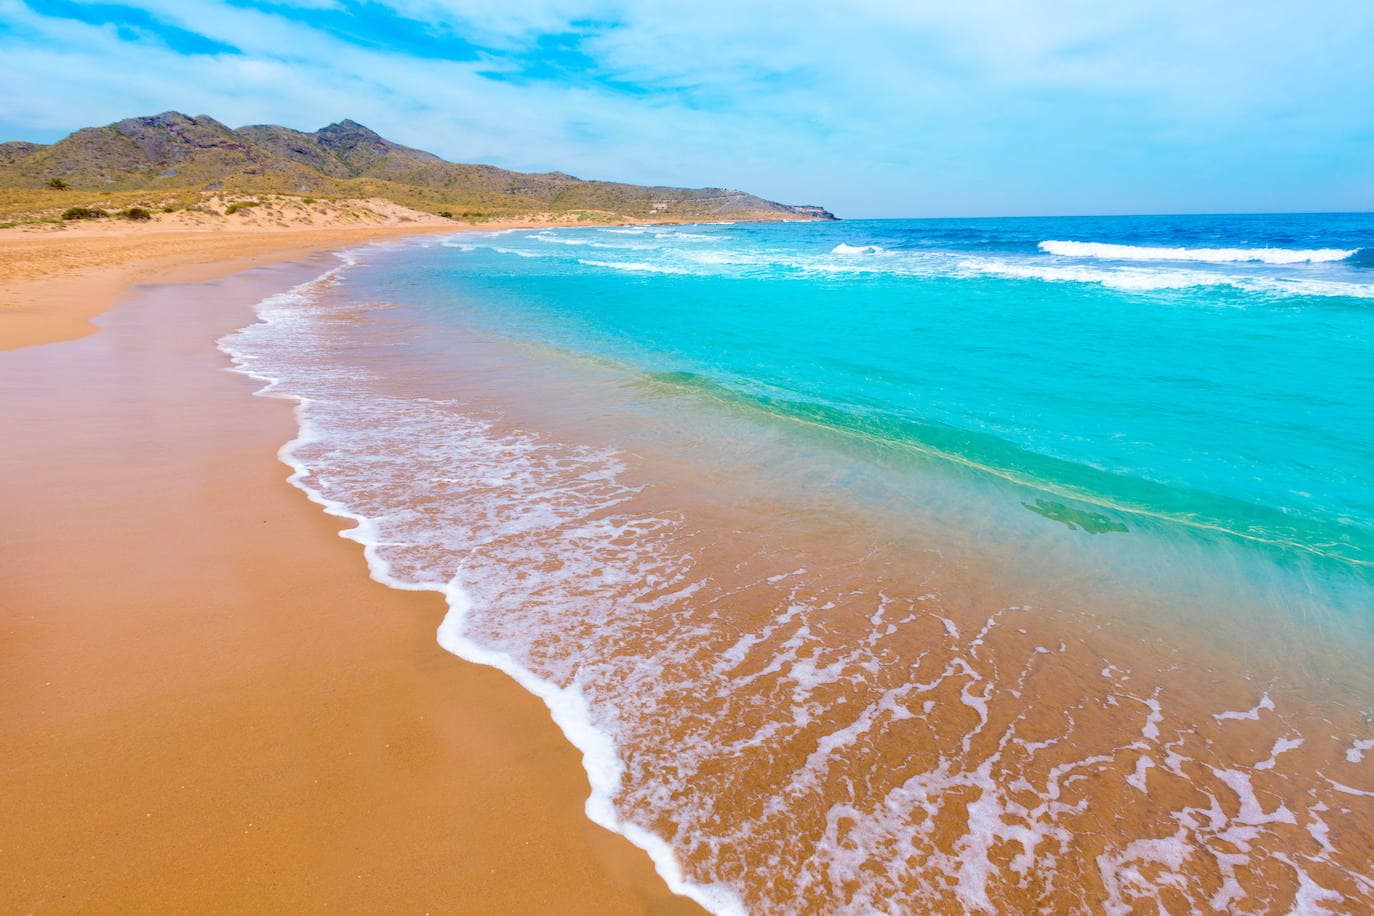 Calblanque, Murcia. "Las playas vírgenes de Calblanque parecen estar a un mundo de distancia", dice 'The Guardian'. 